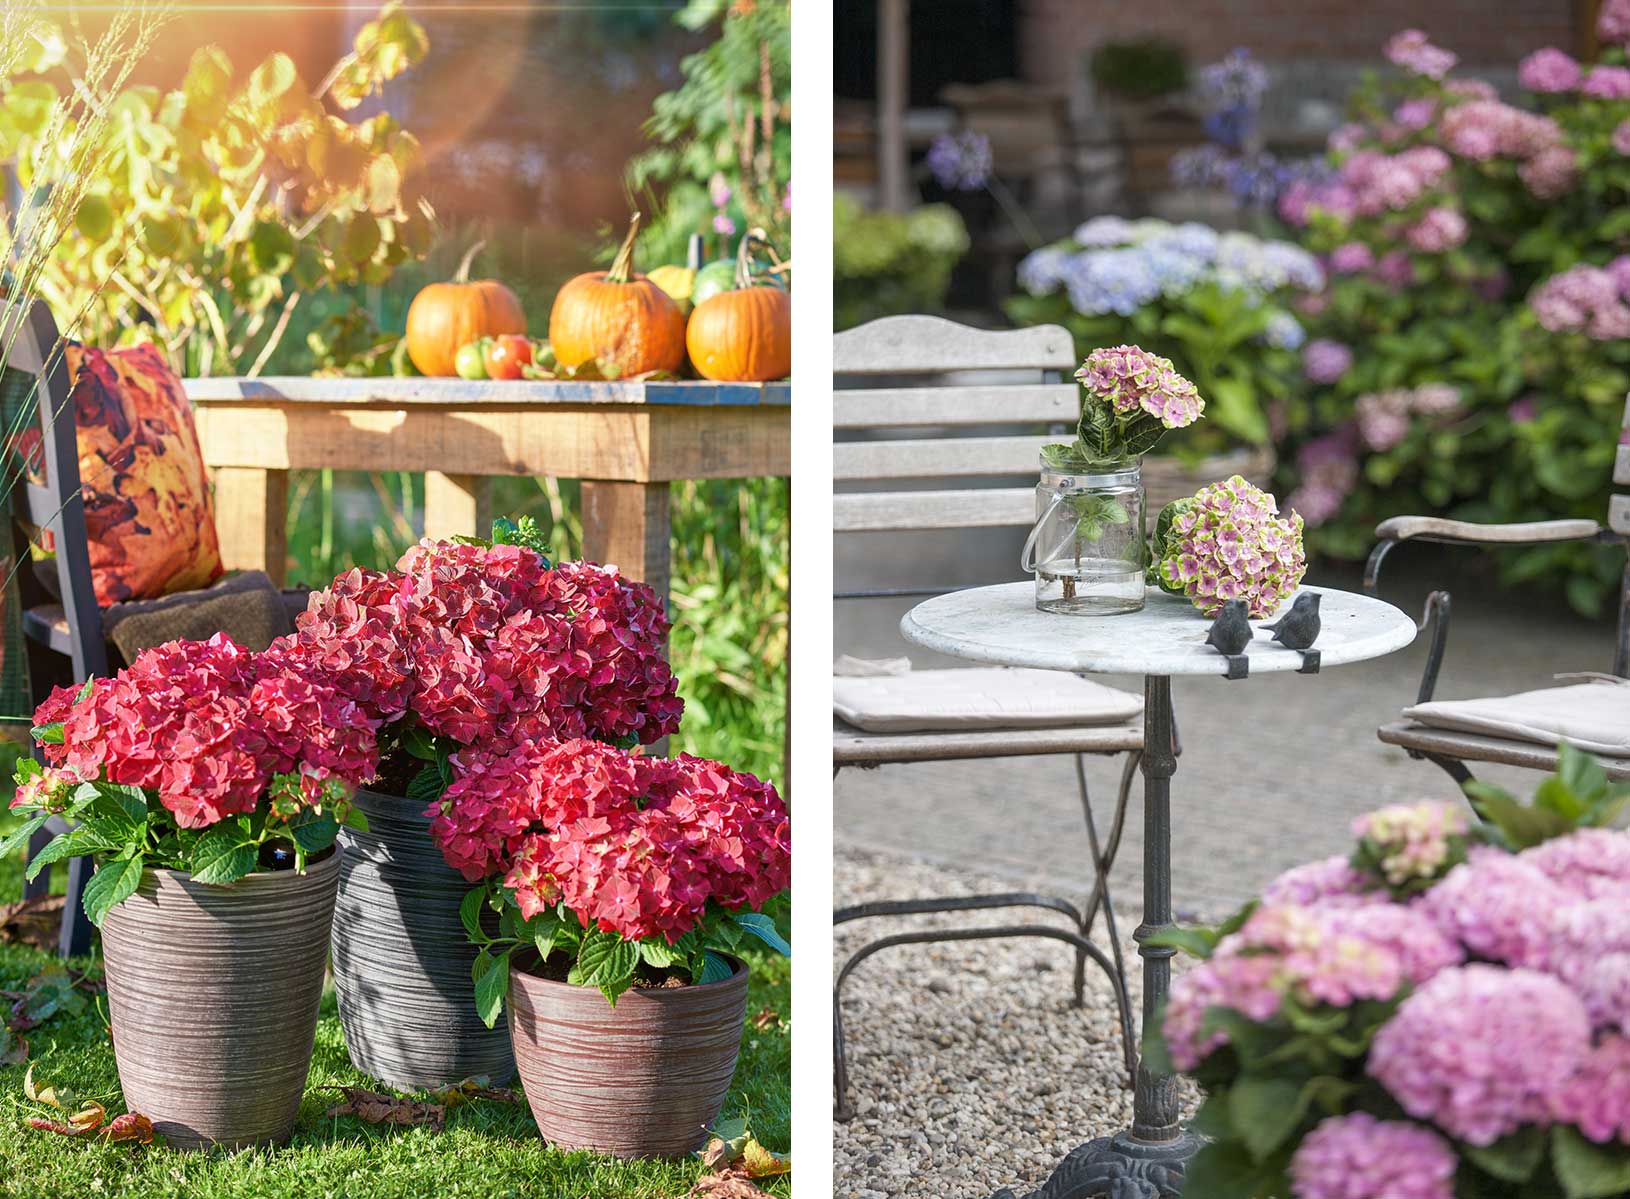 Farbenfroher Herbst auf dem Hortensien Garten: im mit Age extralanger Blütezeit - Balkon Golden und